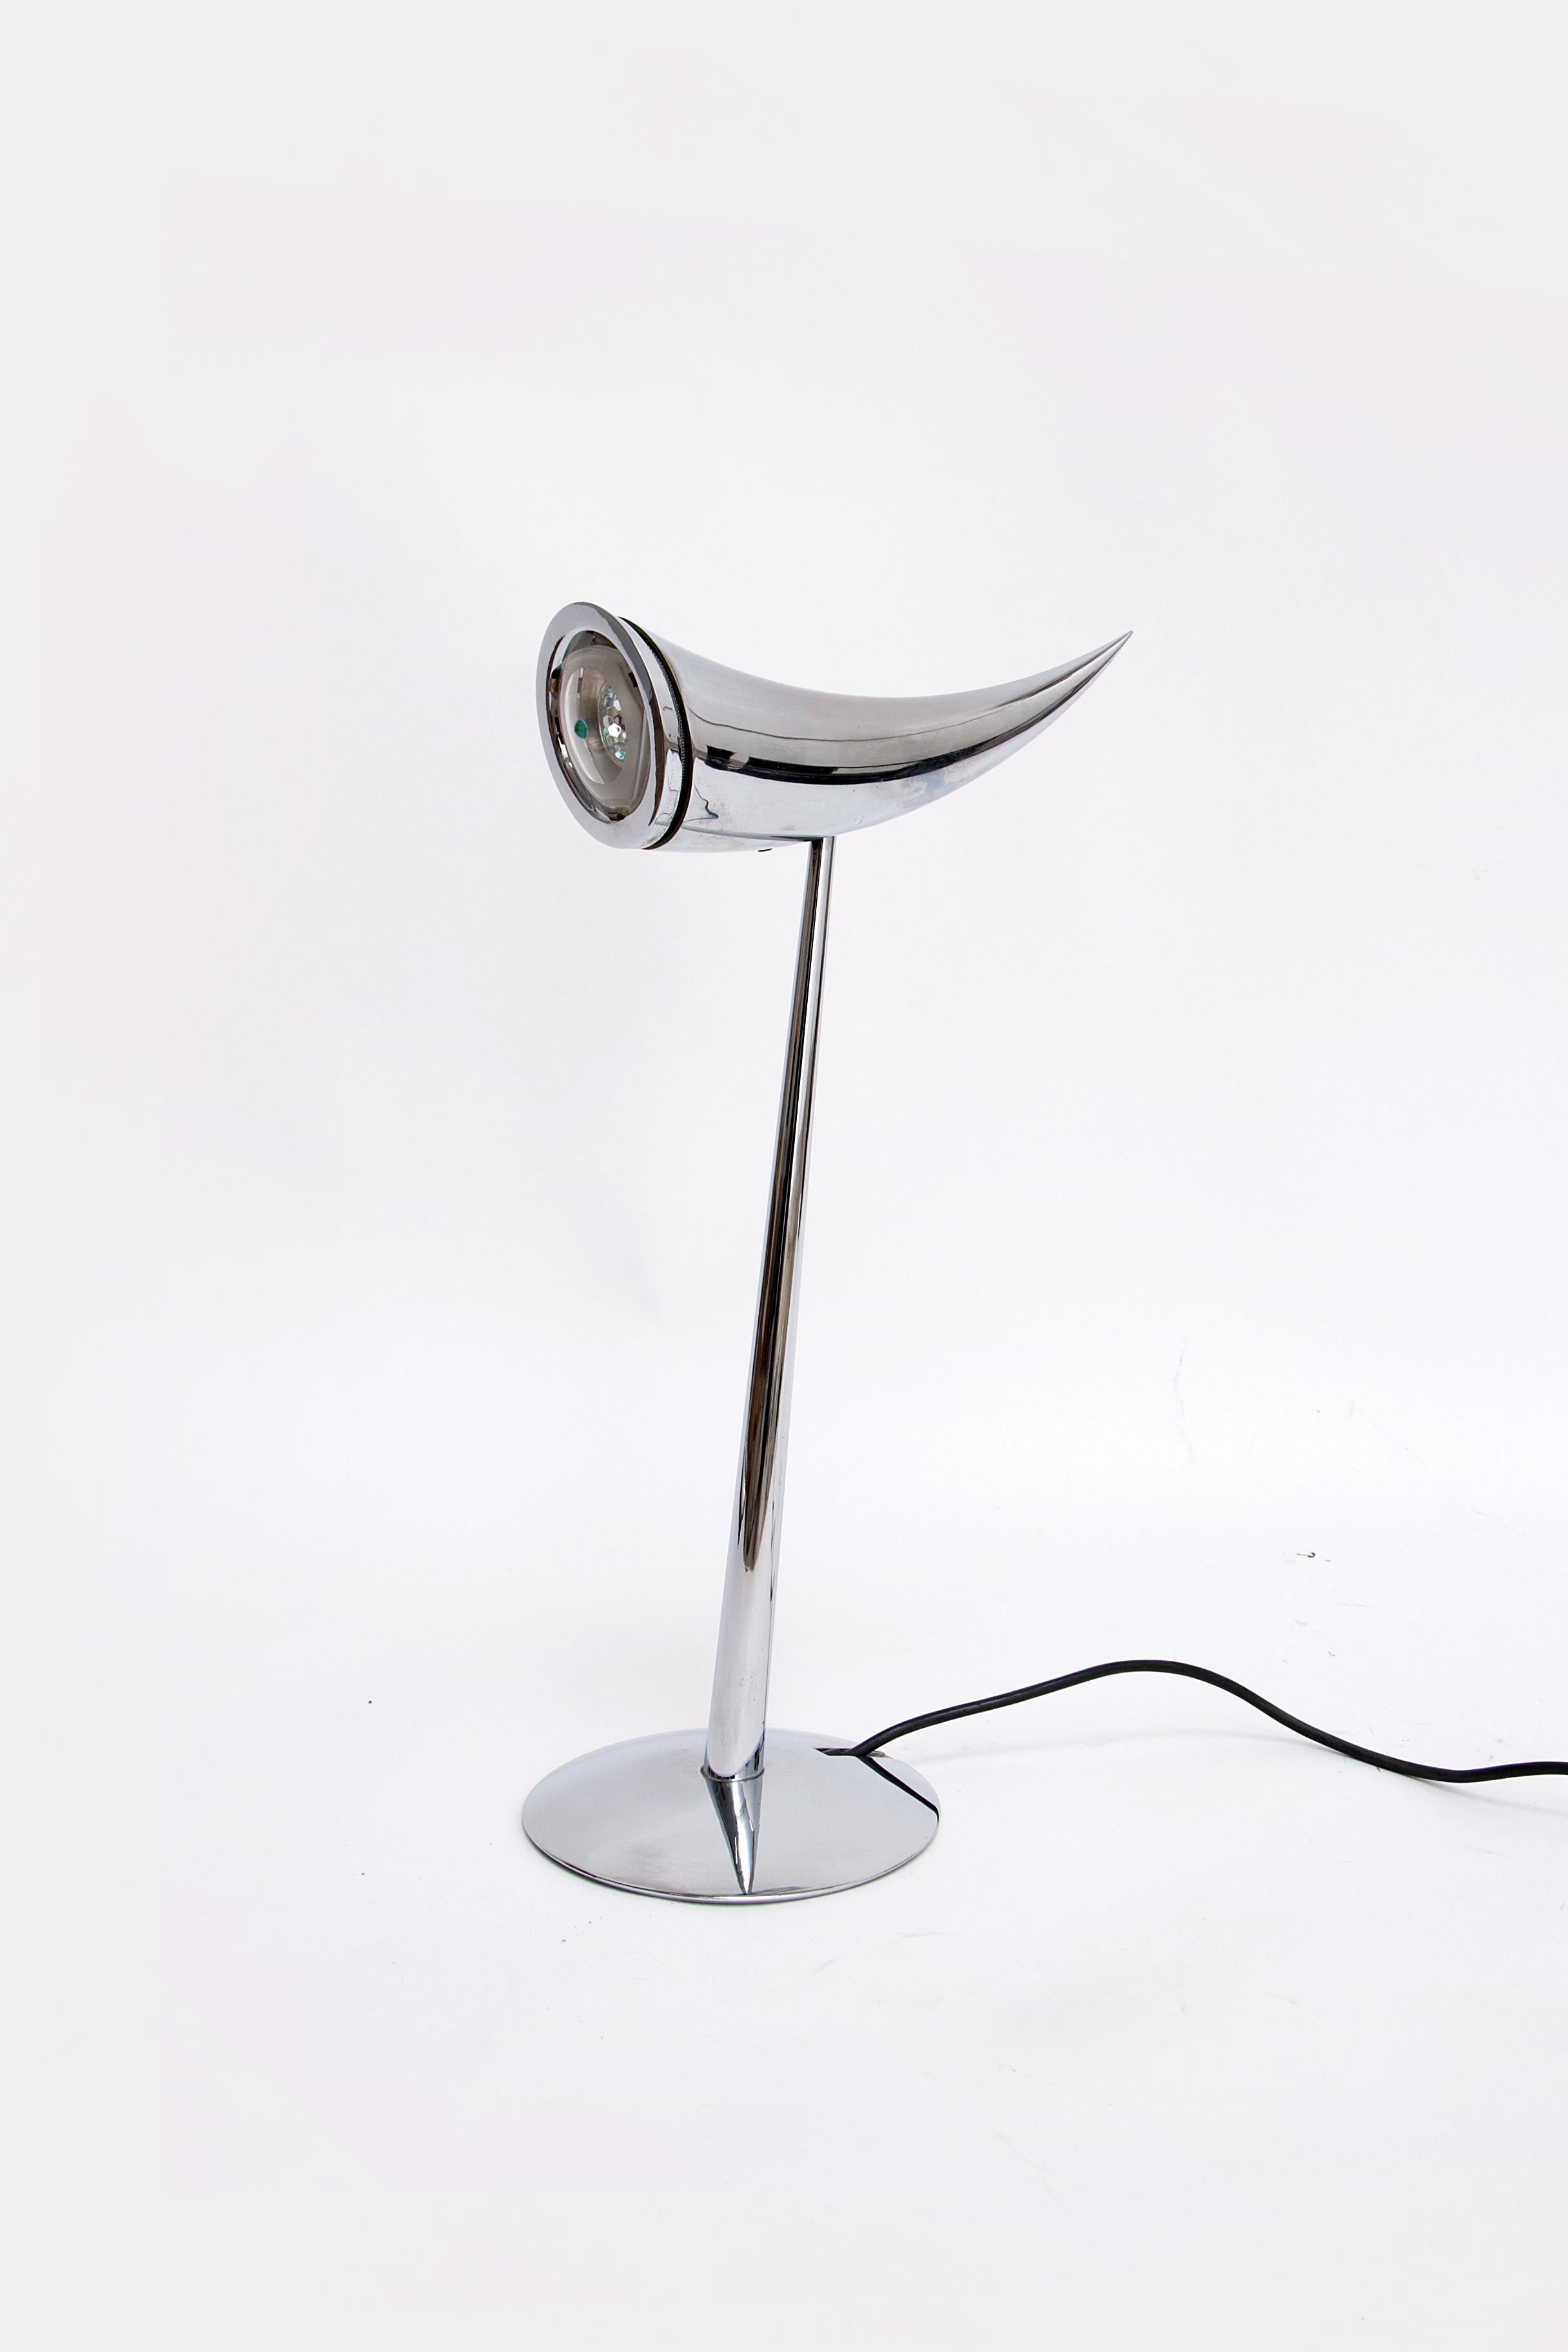 La lampe Ara a été conçue par Philippe Starck en 1988 et porte le nom de sa fille. La lampe a été fabriquée par Flos en Italie. L'interrupteur marche/arrêt est intégré à la lampe. Lorsque la tête de la lampe est orientée vers le haut, la lampe est